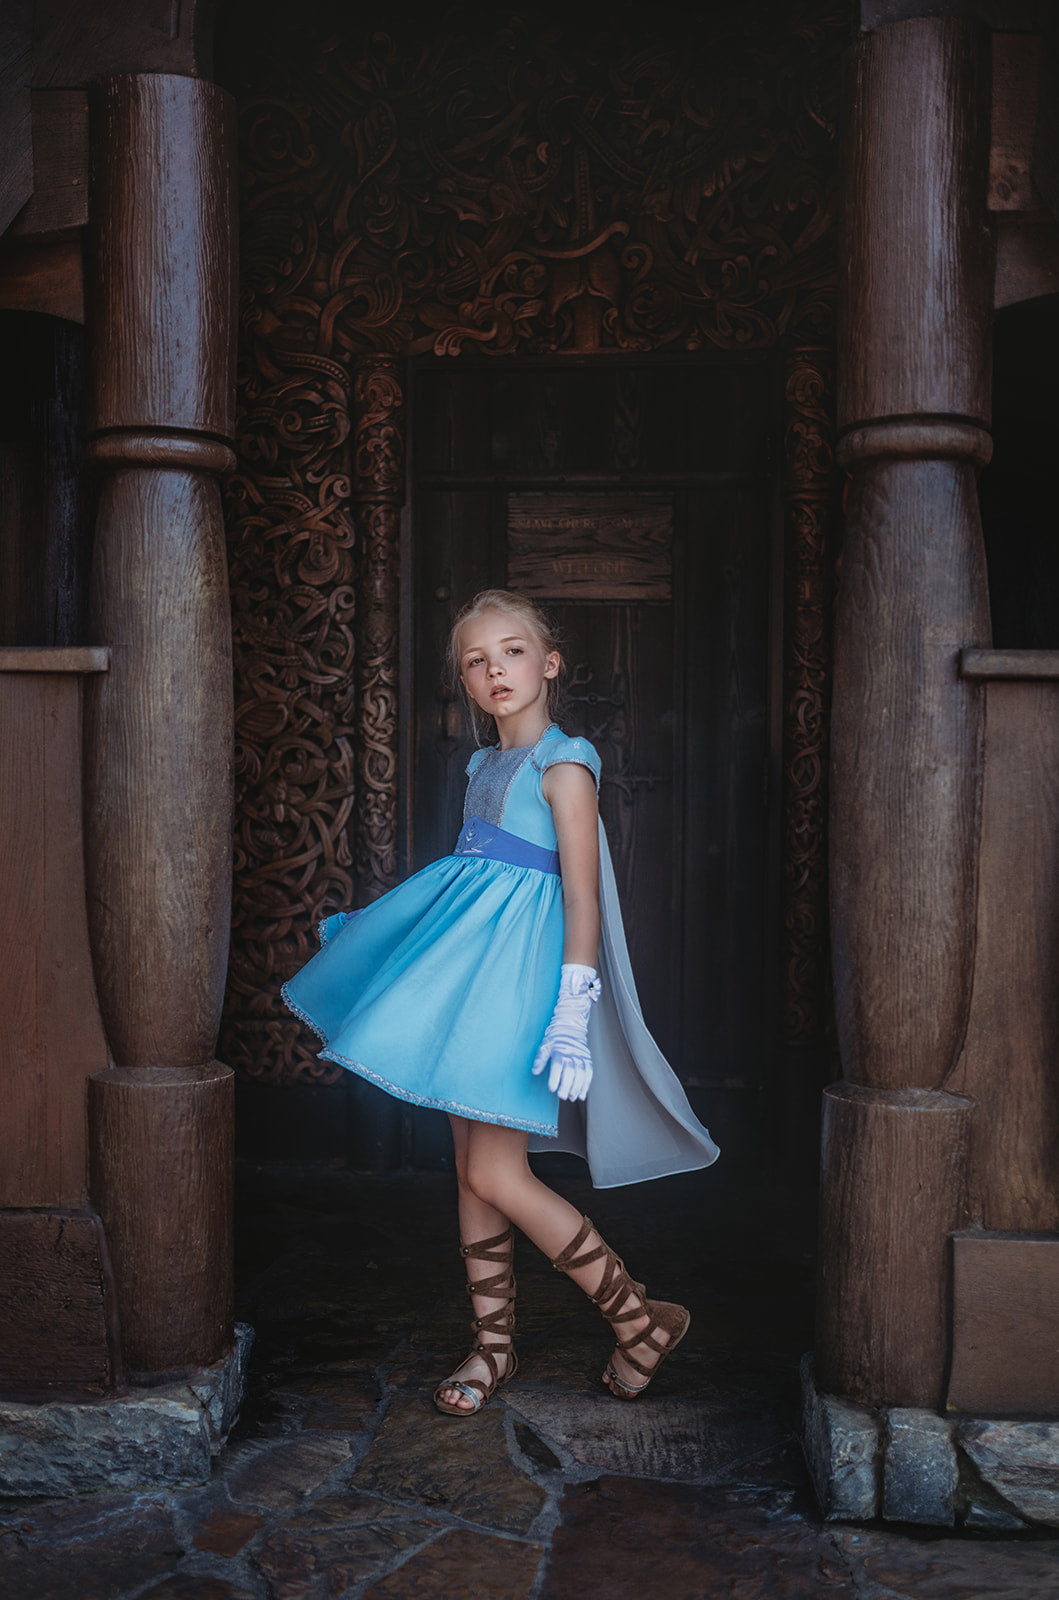 Dress Like Queen Elsa Costume